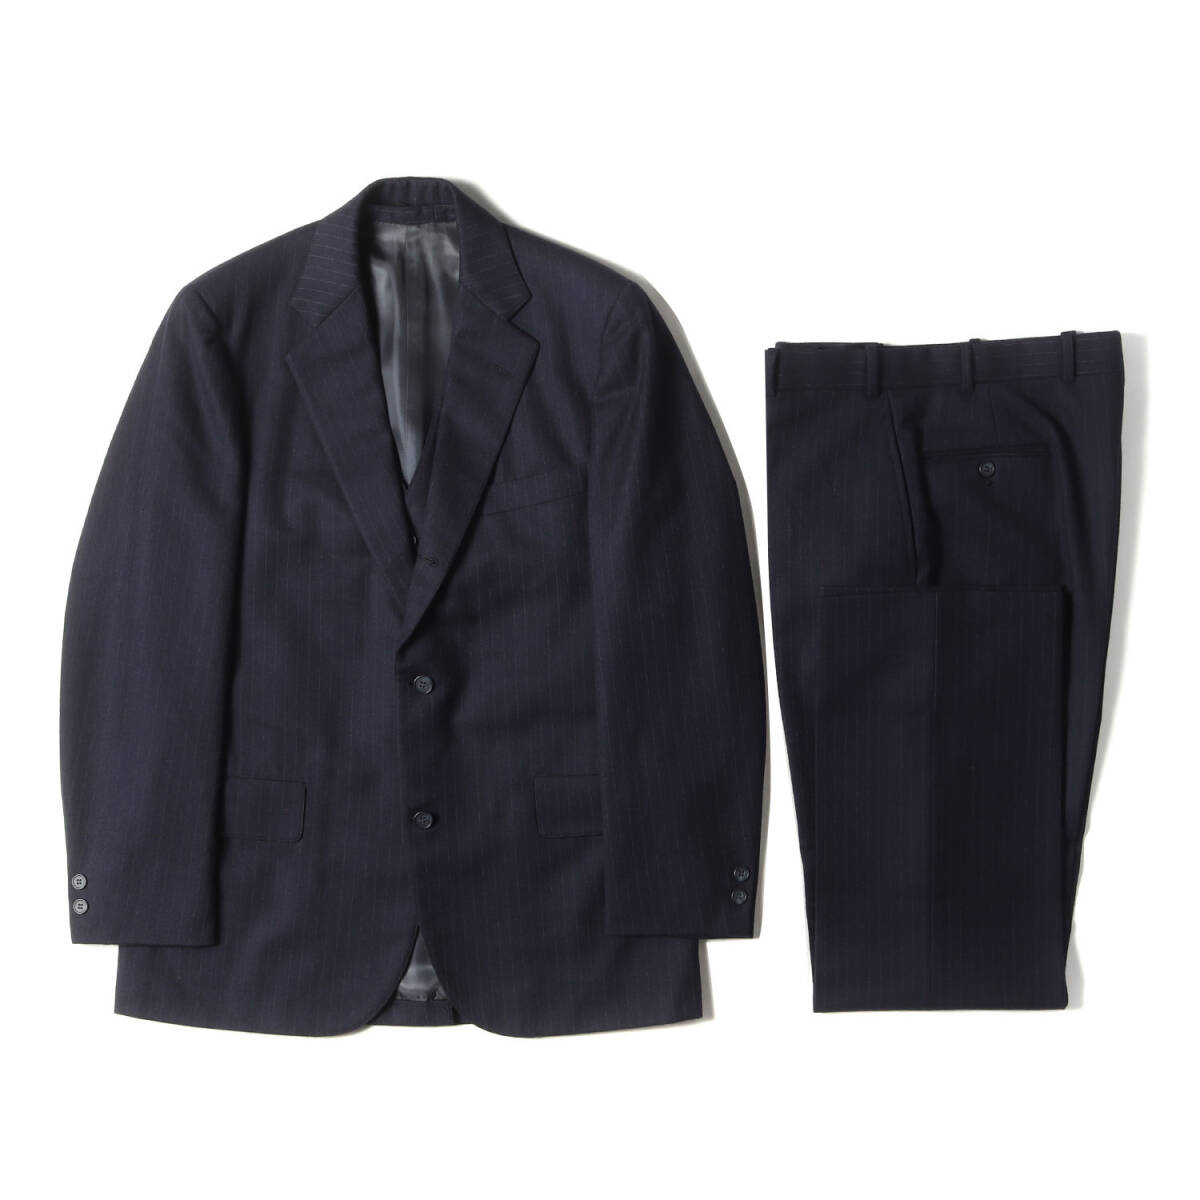 BROOKS BROTHERS размер :38 80s tailored jacket / жилет лучший / широкий слаксы / 3 деталь выставить костюм серый 